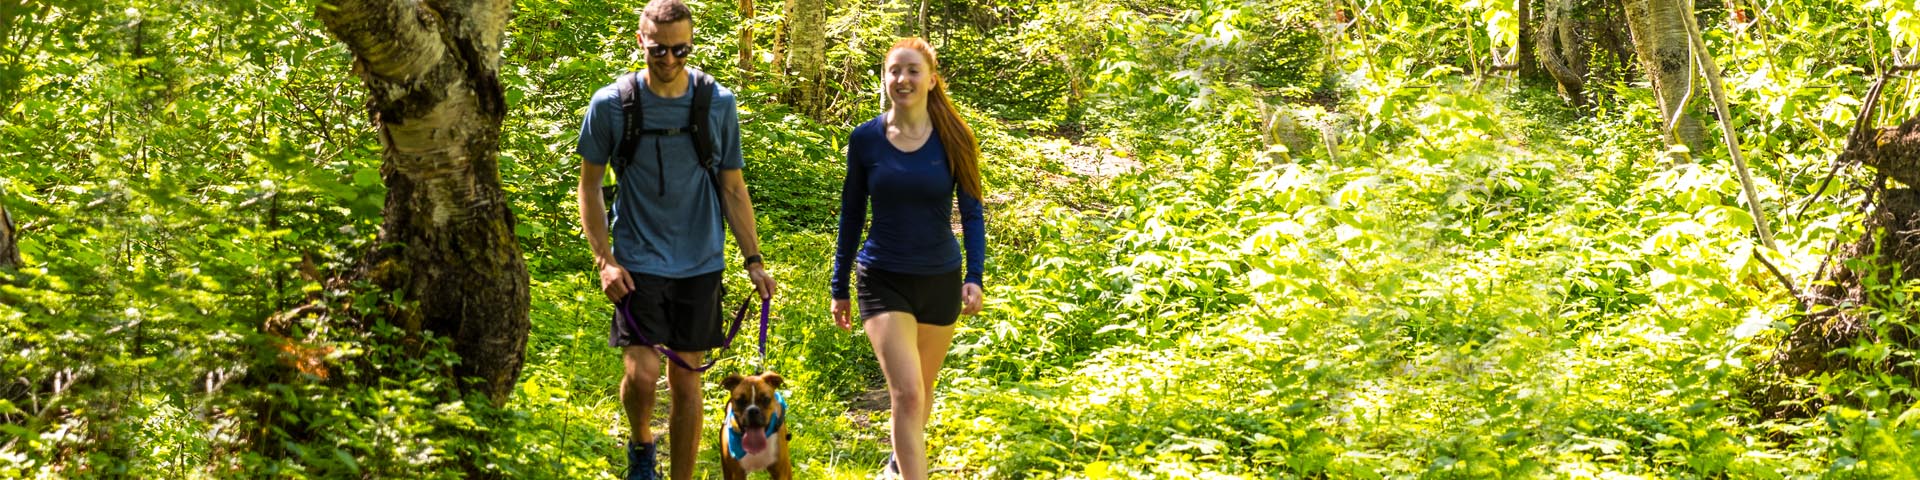 Deux jeunes adultes font de la randonnée avec leur chien en laisse dans la forêt du parc national Forillon.